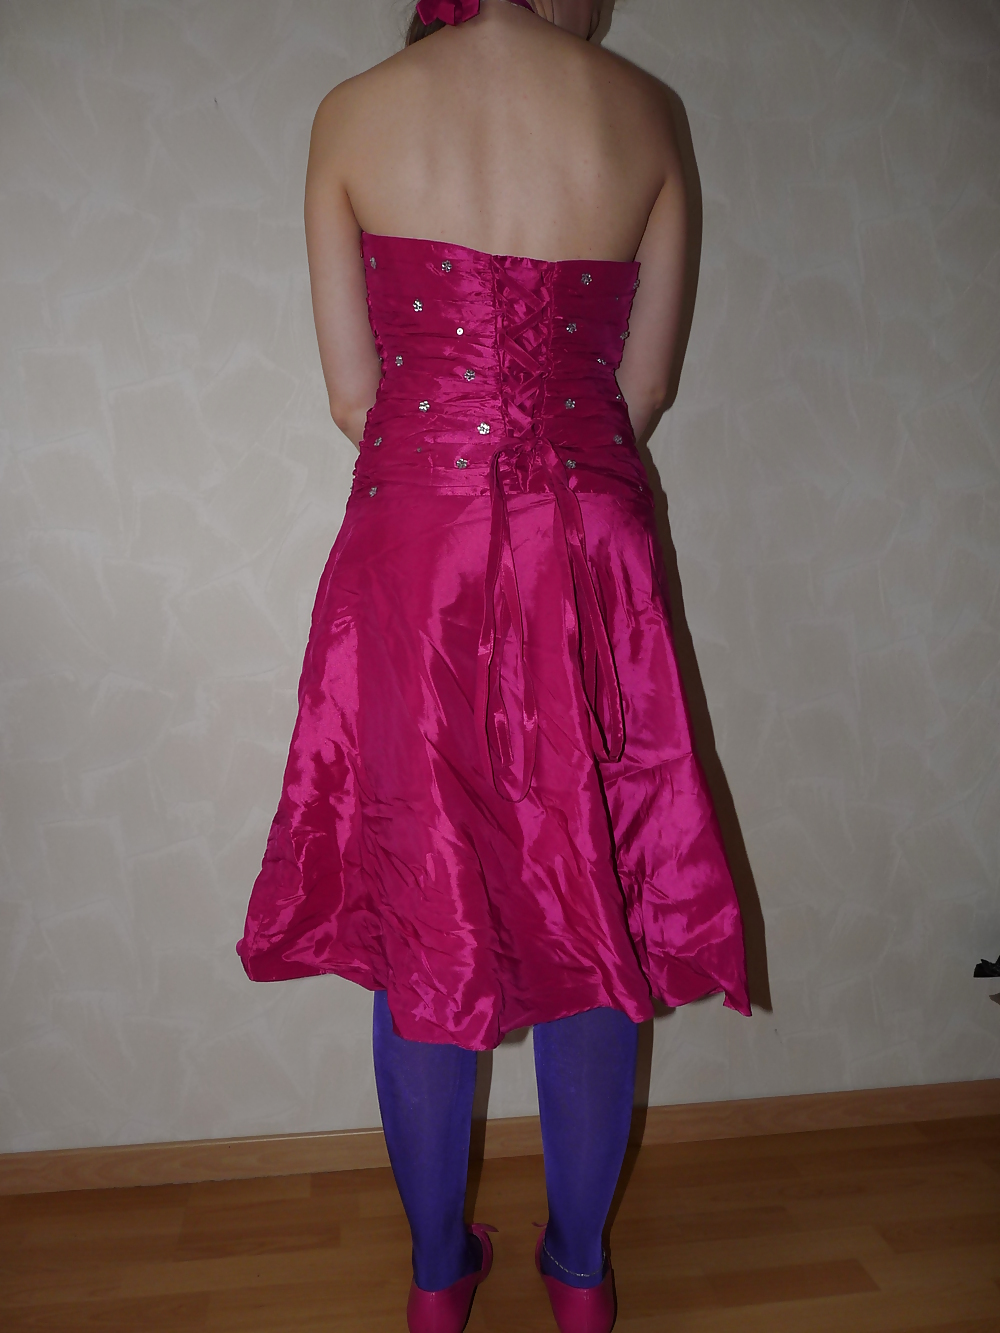 Free Wifes pink silk satin shiny barbie dress photos